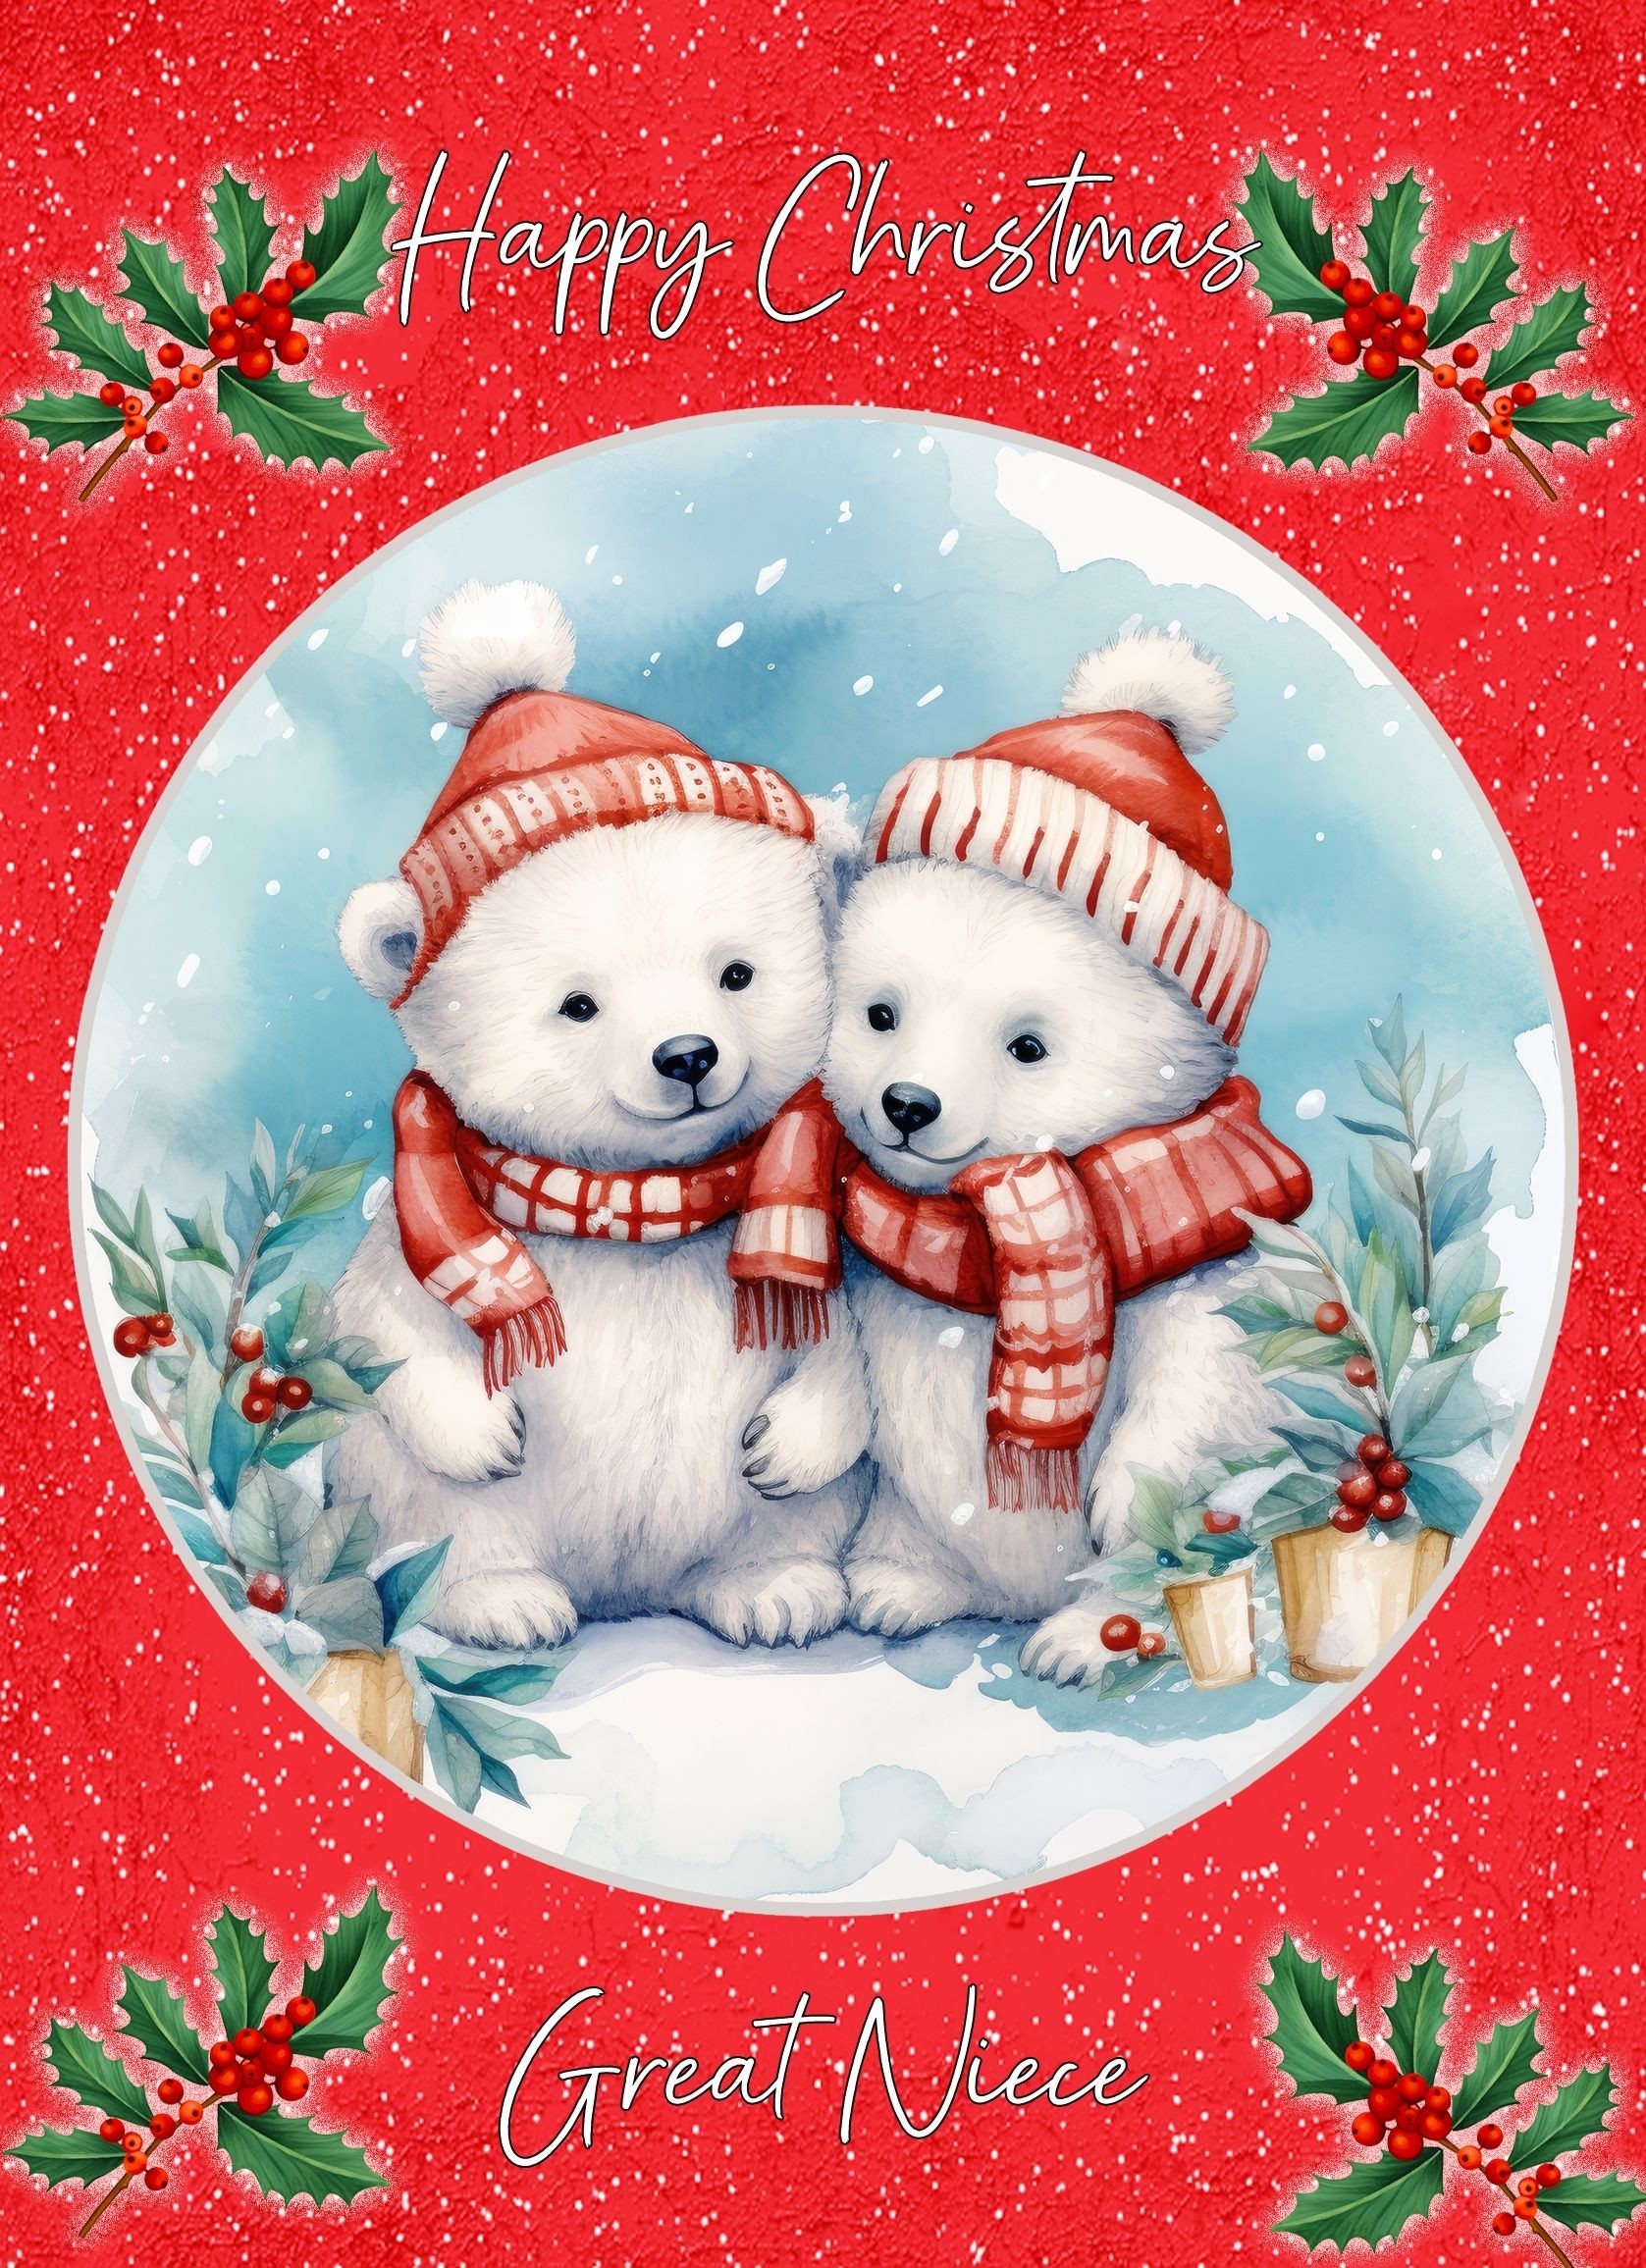 Christmas Card For Great Niece (Globe, Polar Bear Couple)